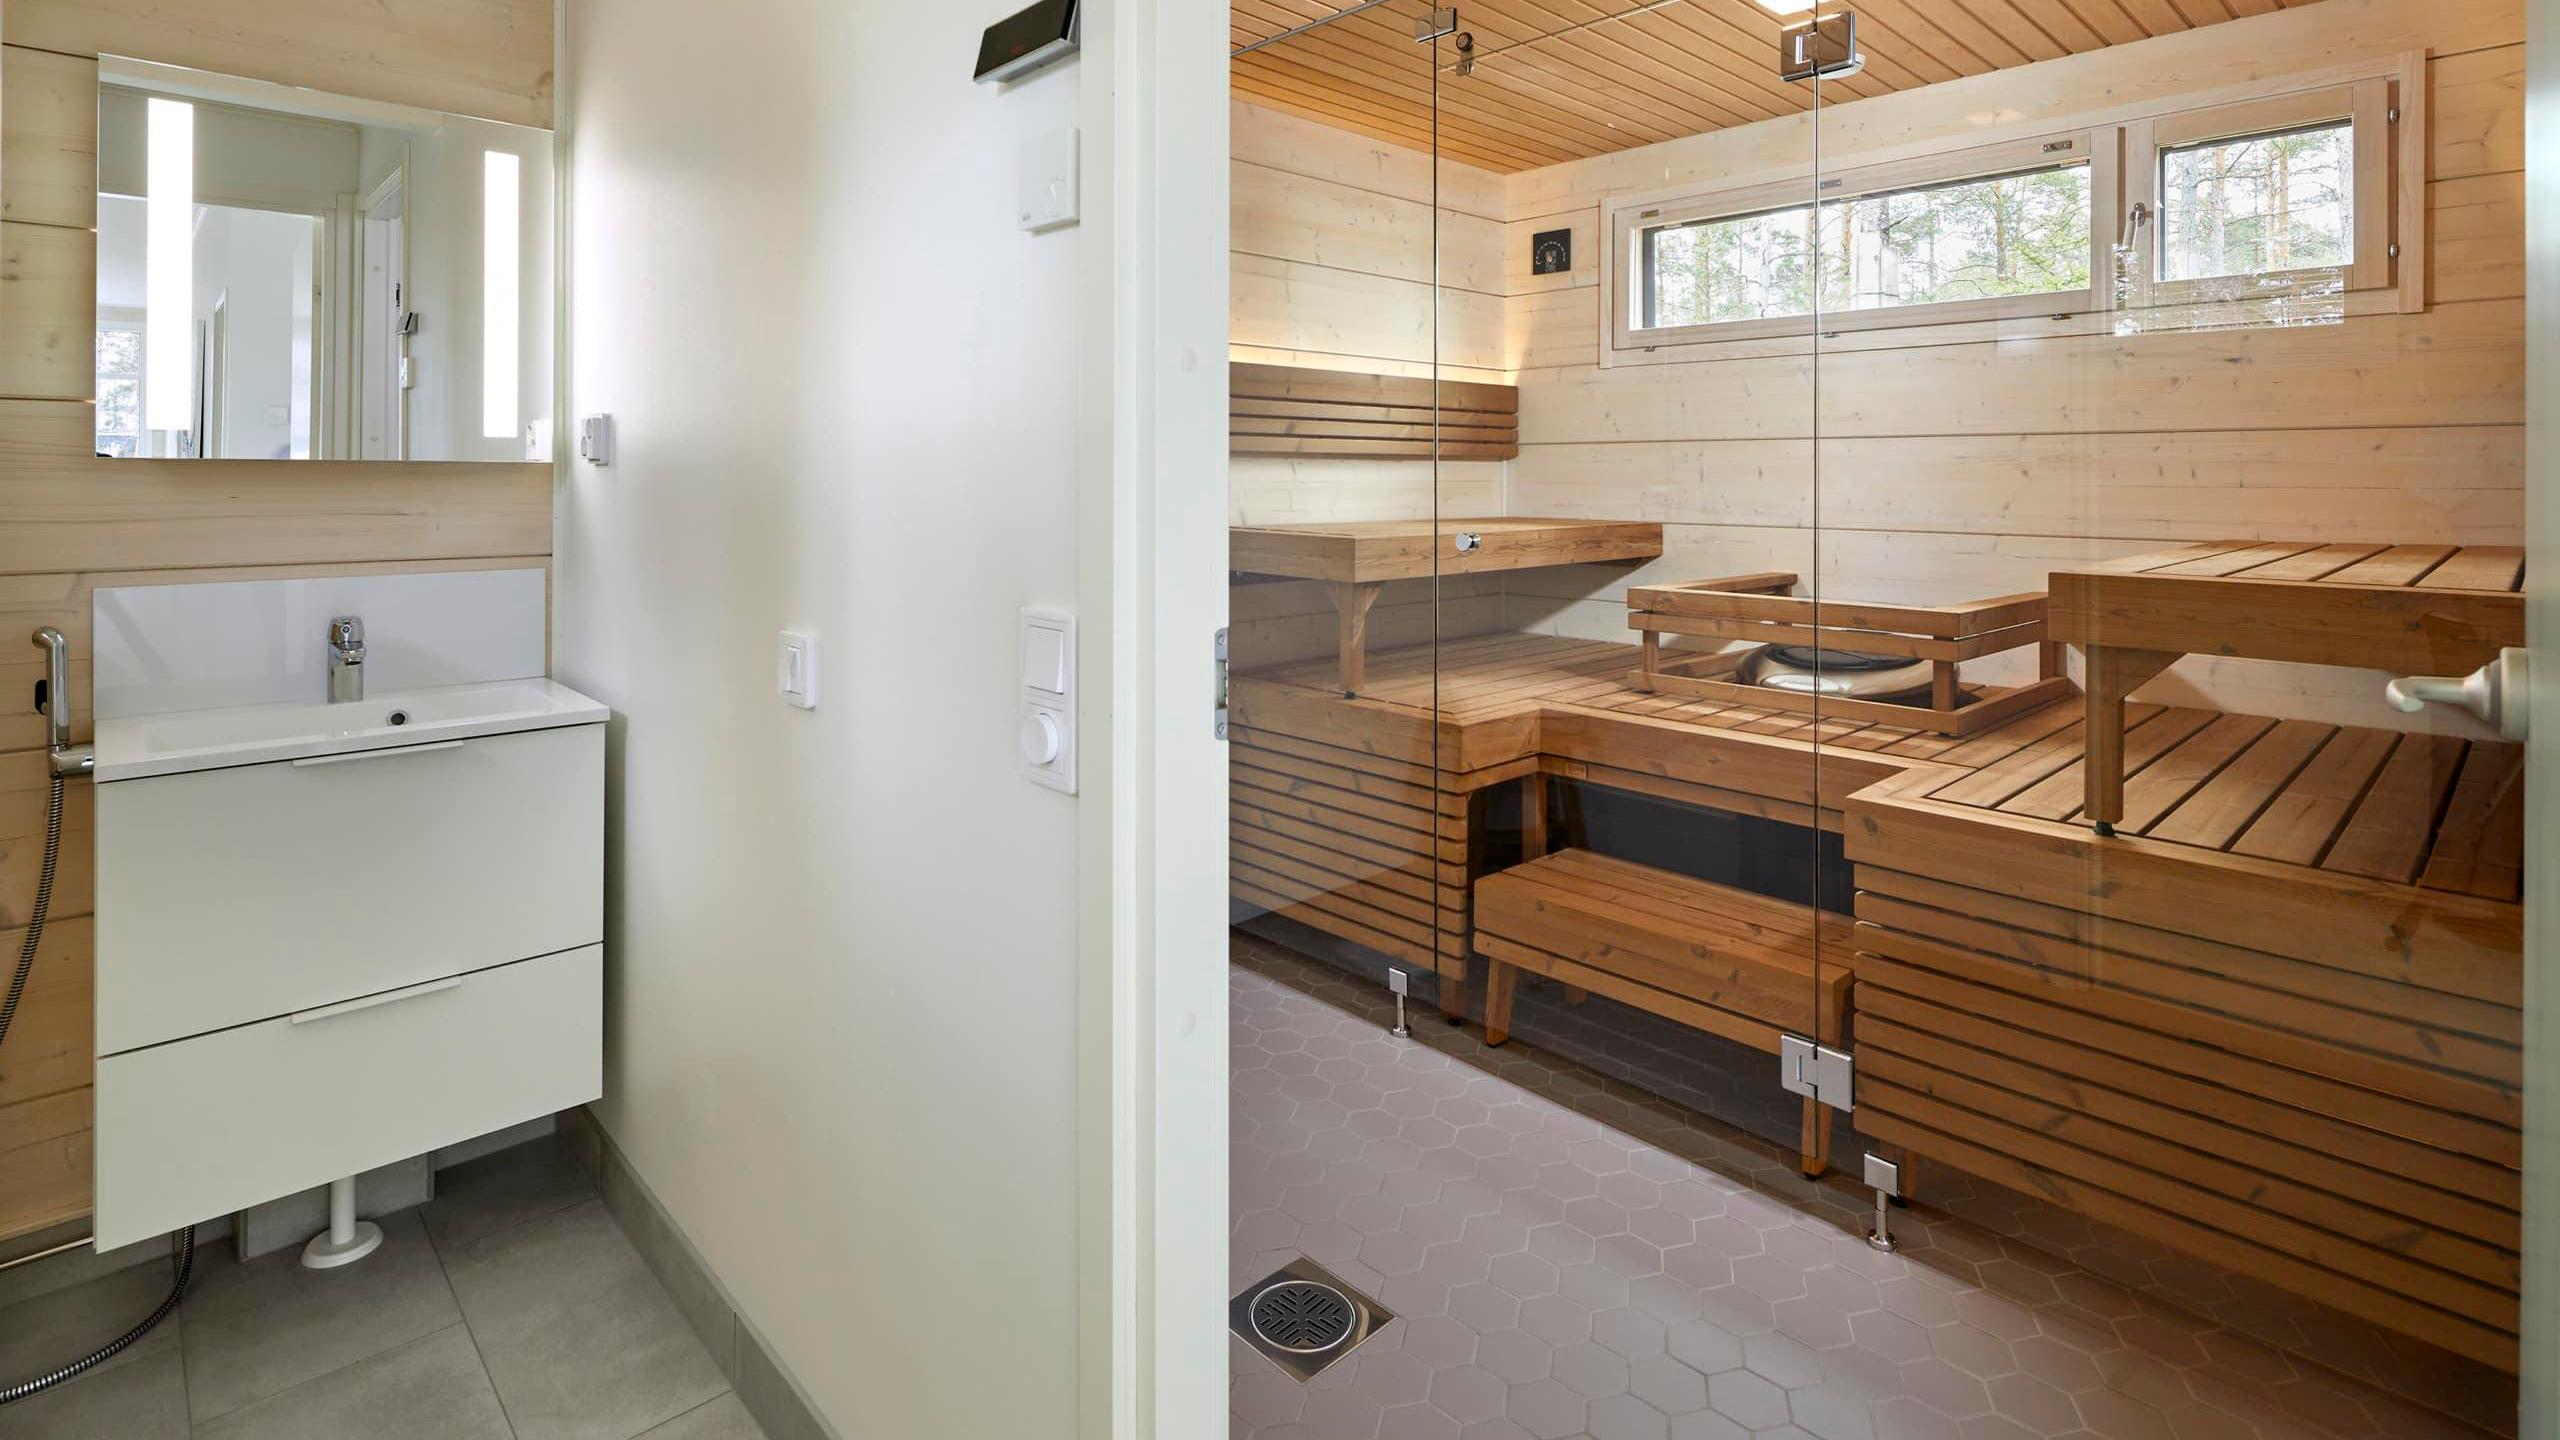 Wc-tila, kylpyhuone ja sauna toistavat hirsikodin hillityn kaunista värimaailmaa.